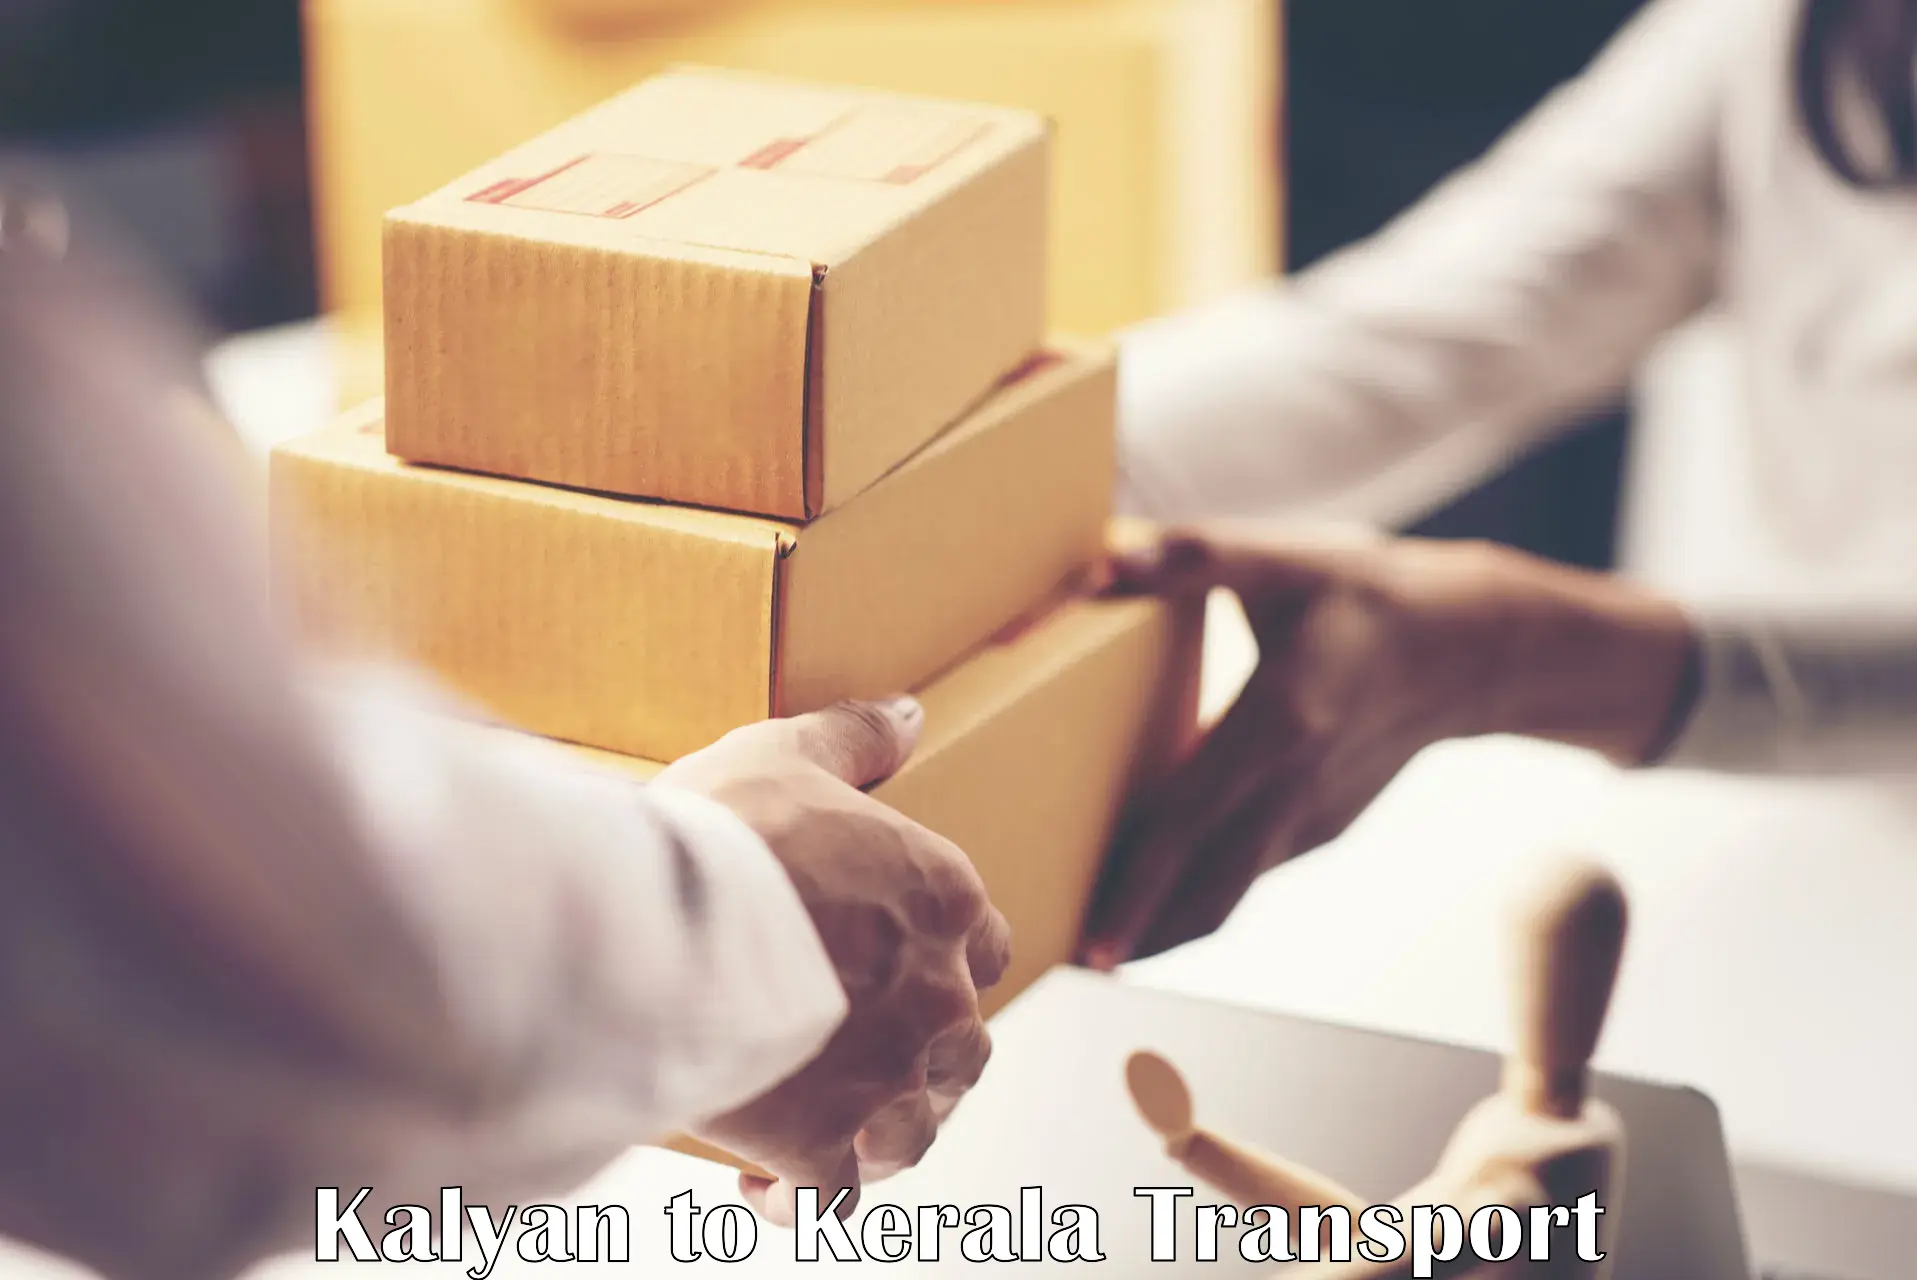 Goods transport services Kalyan to Kiliyanthara